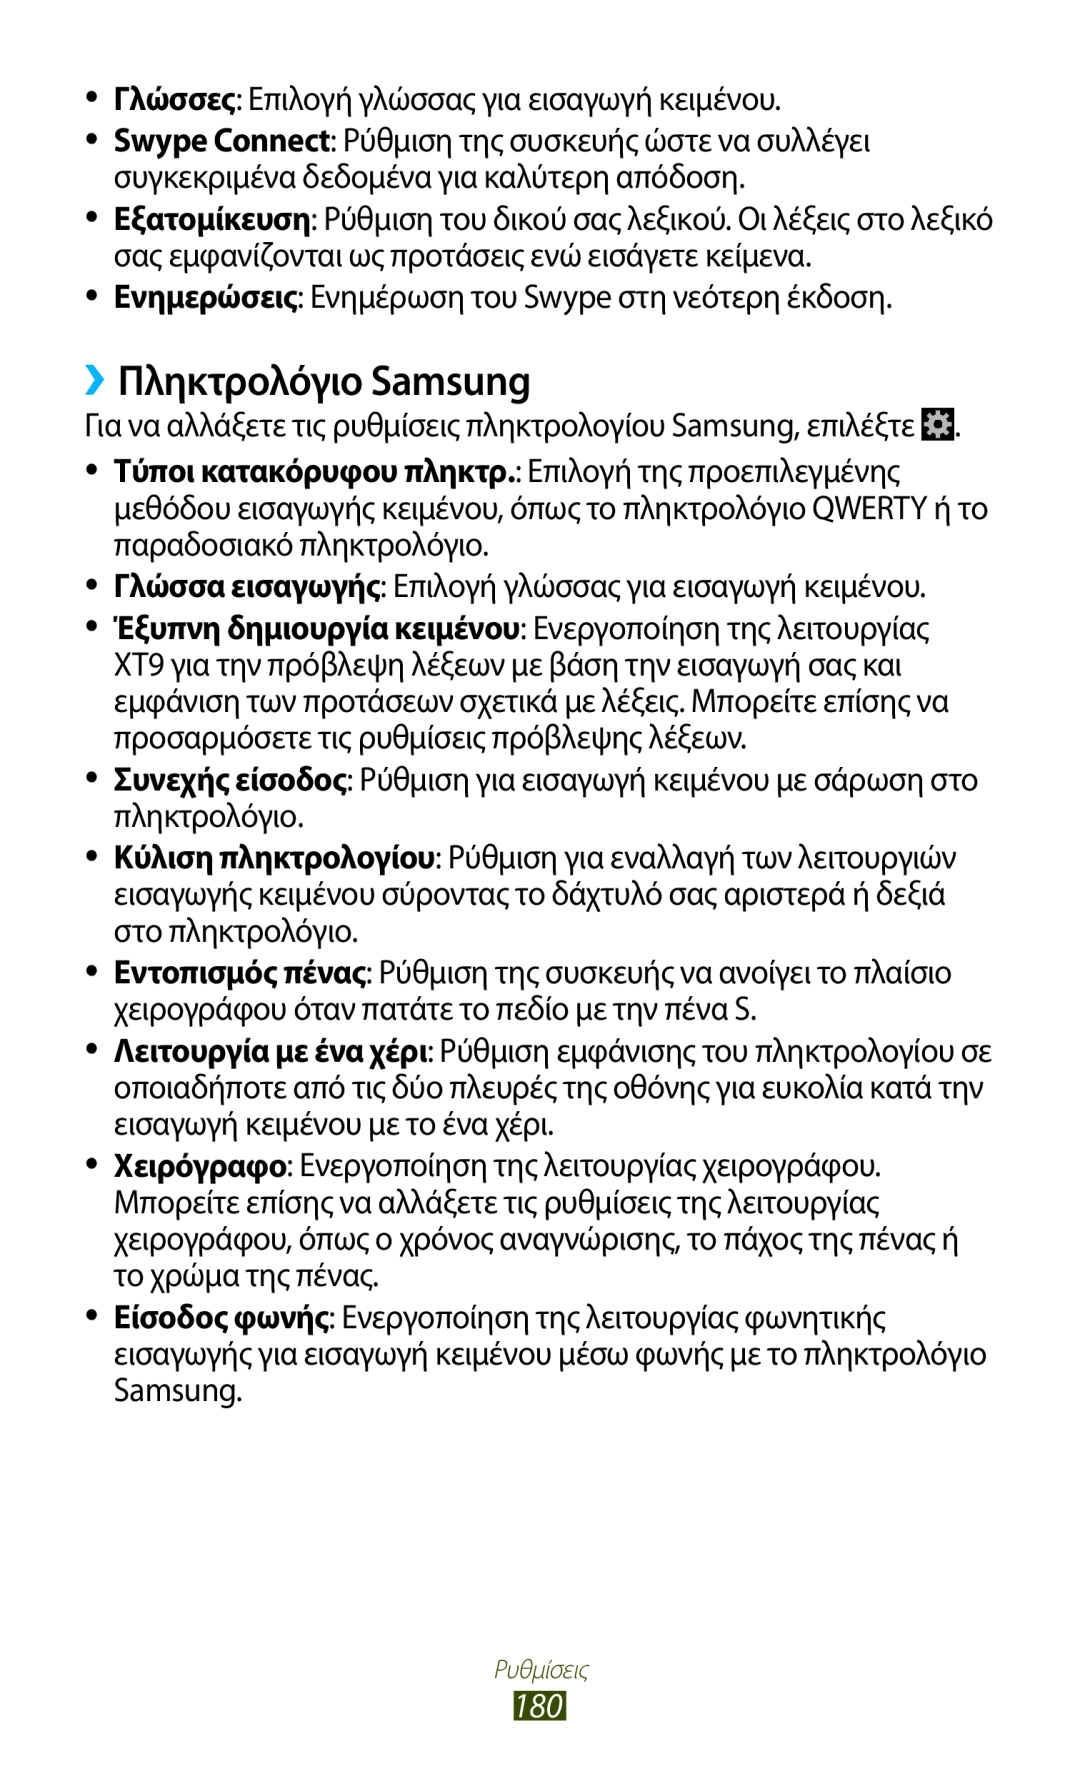 Samsung GT-N7000ZBAEUR, GT-N7000RWAEUR, GT-N7000RWAVGR, GT-N7000RWACOS, GT-N7000ZBEVGR, GT-N7000ZBEEUR ››Πληκτρολόγιο Samsung 